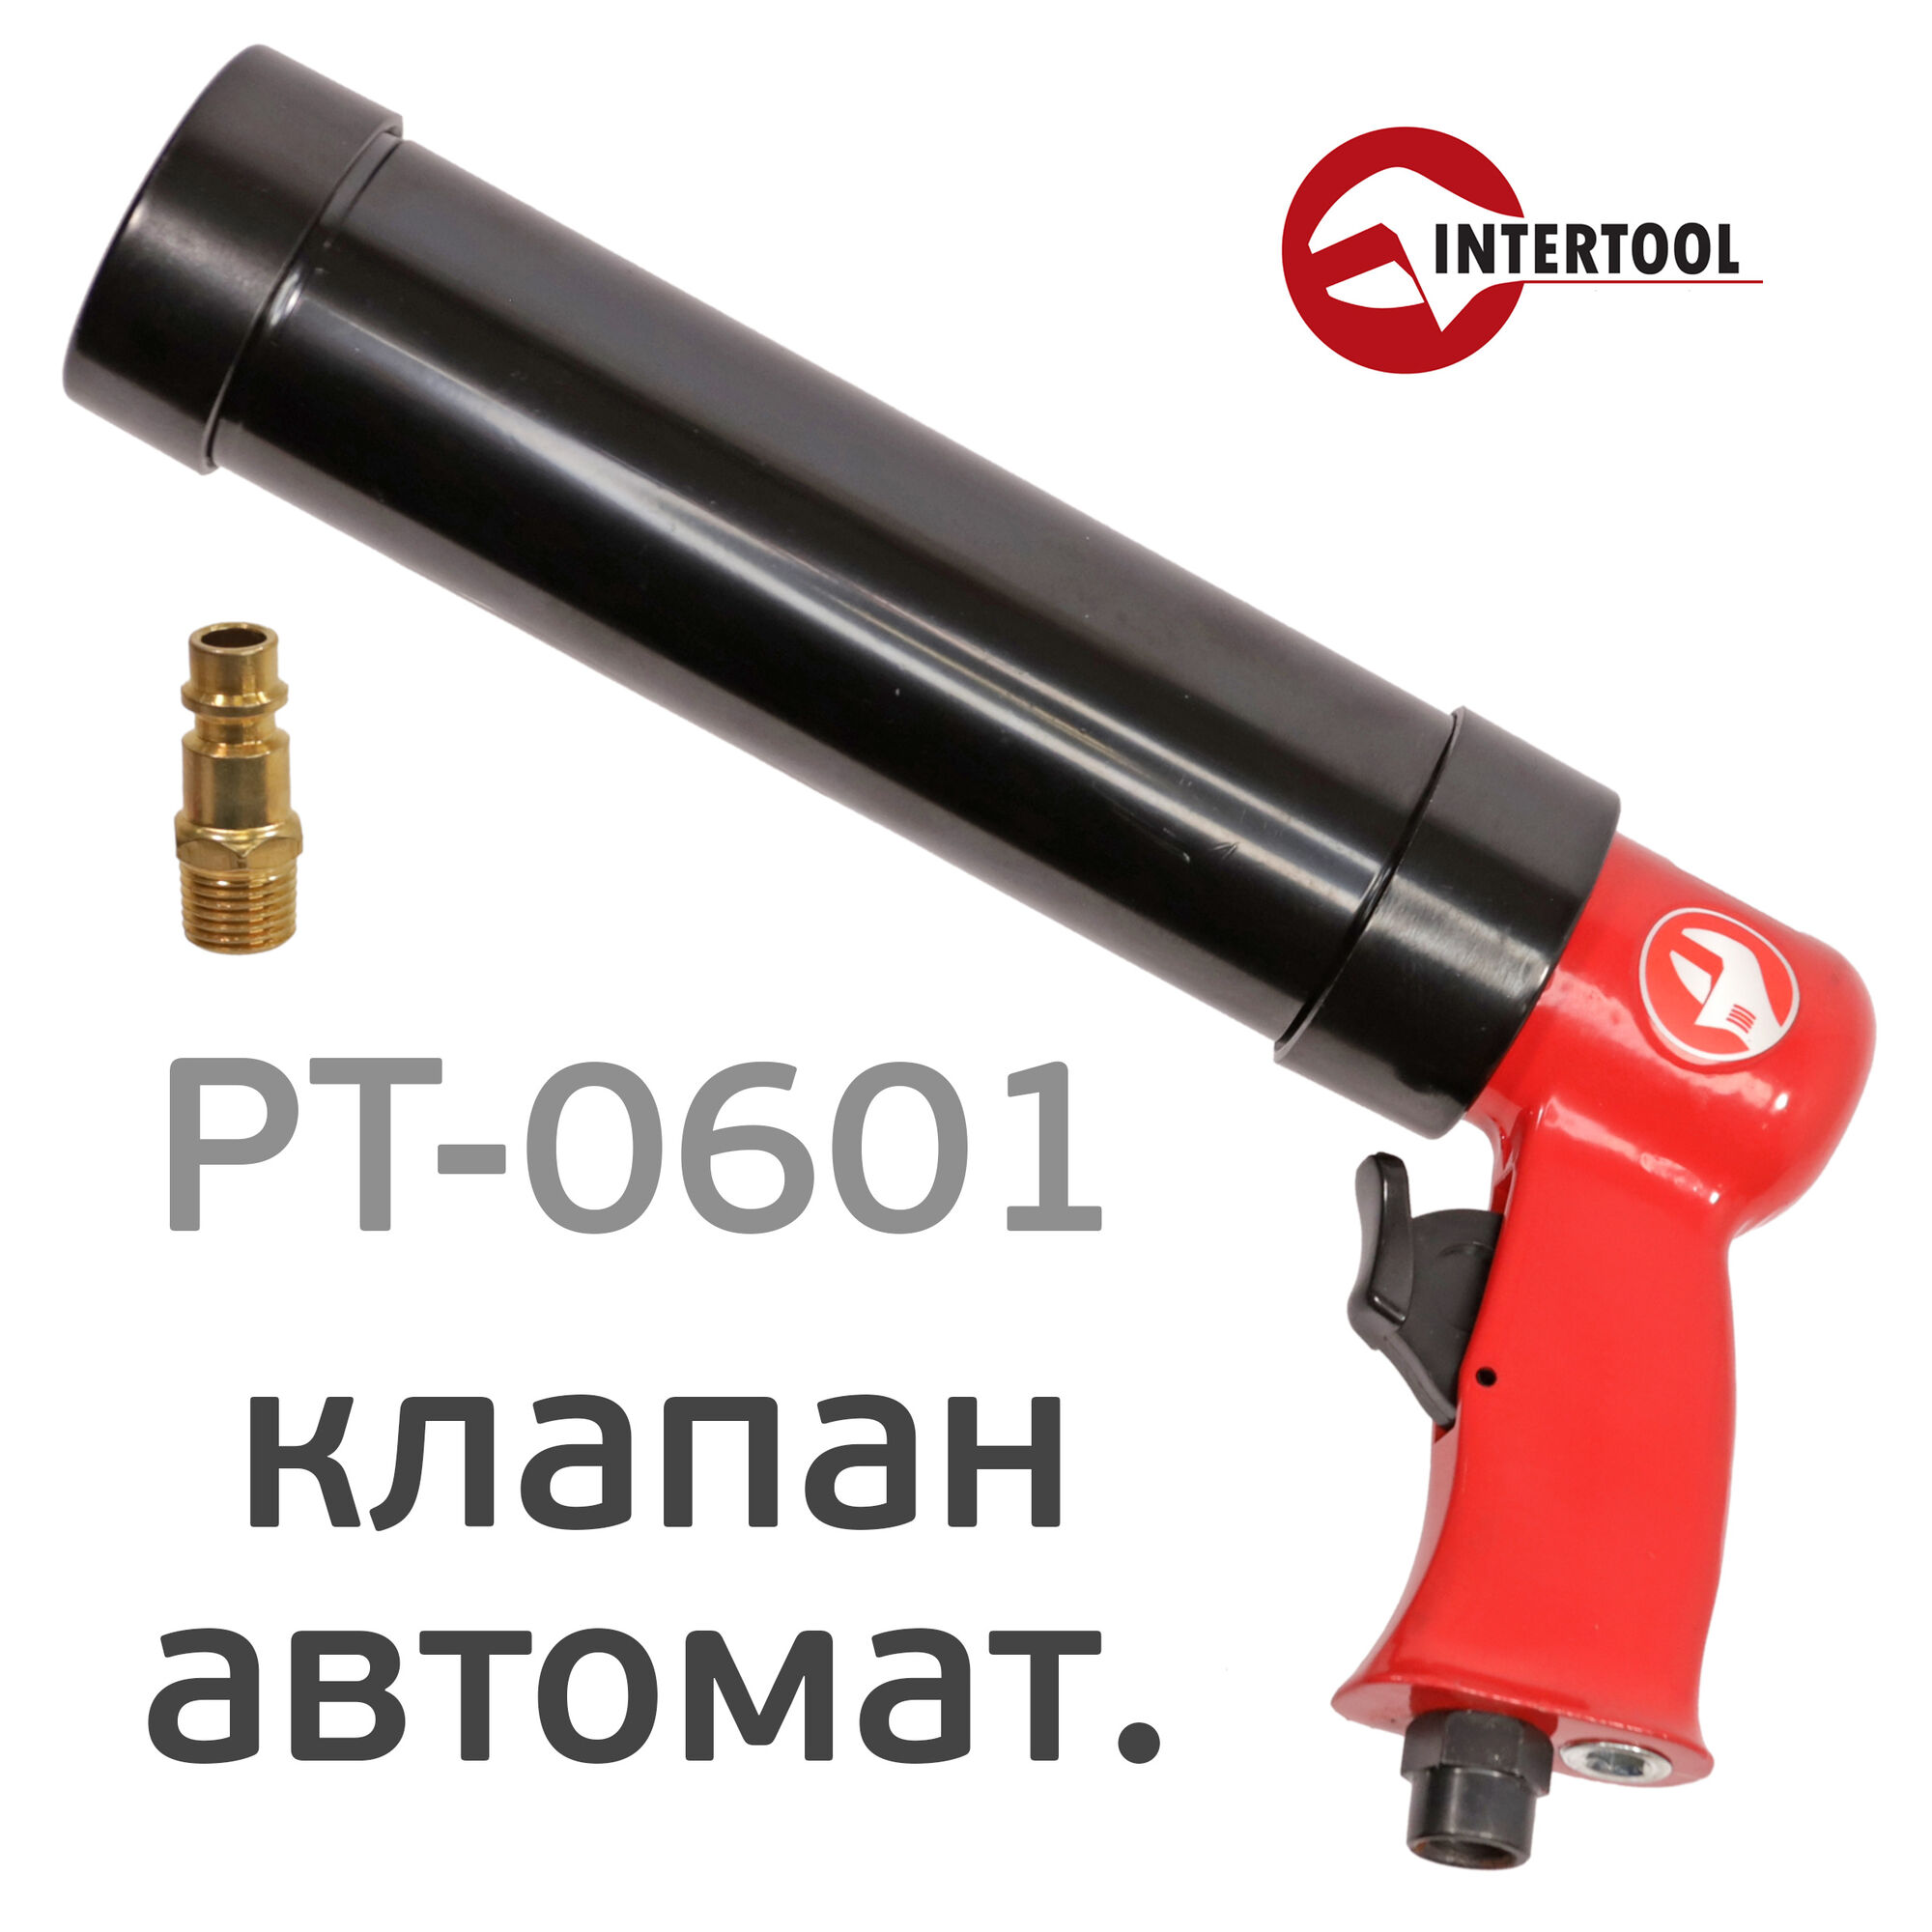 Пистолет для герметика Intertool PT-0601 пневматический для тубы 310мл (автосброс сжатого воздуха)